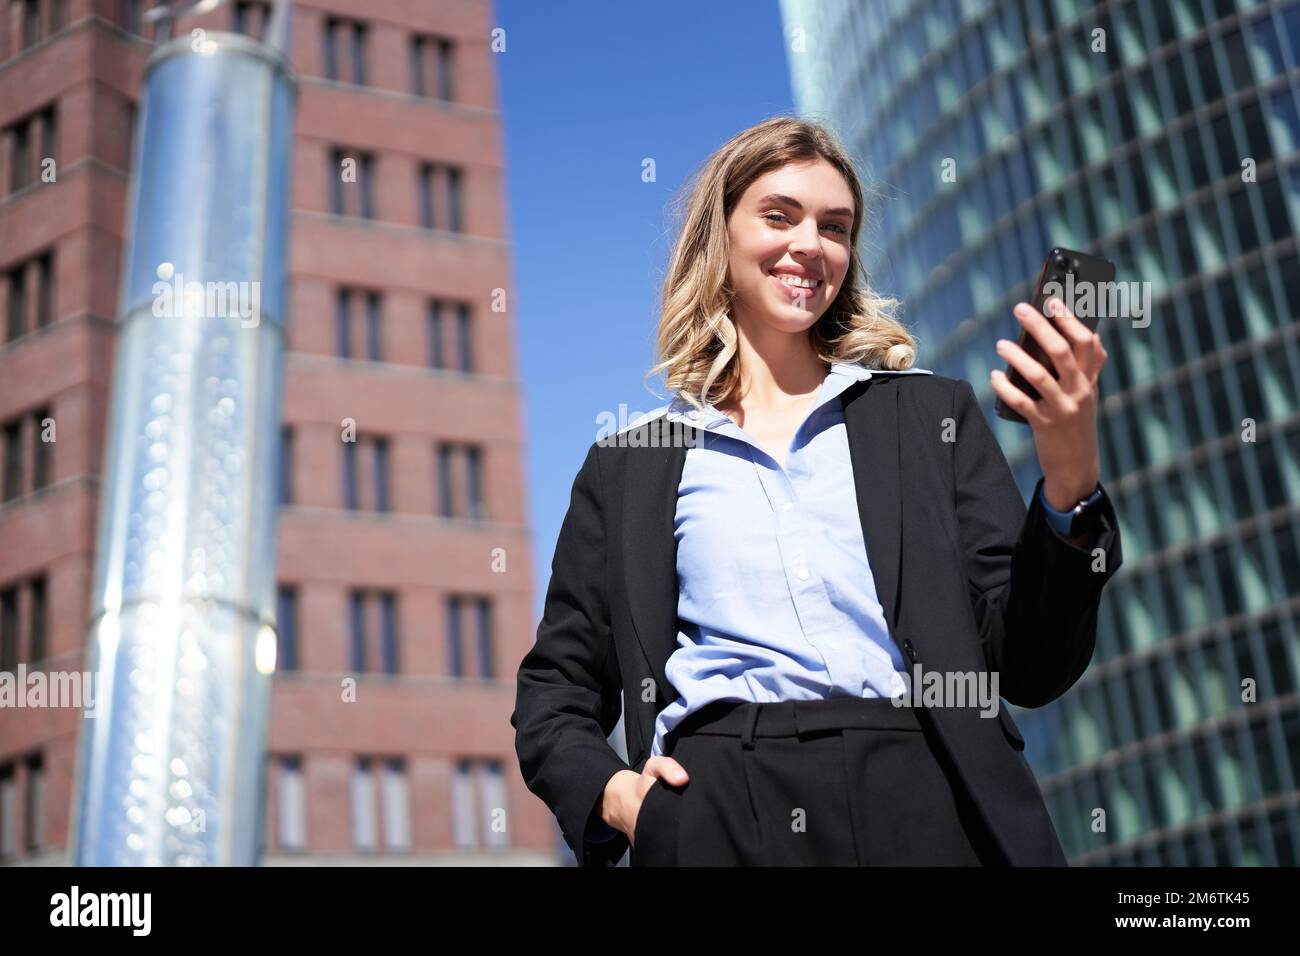 Prise de vue en contre-plongée d'une femme d'affaires en costume, debout dans la rue et regardant un téléphone portable, tenant un smartphone Banque D'Images